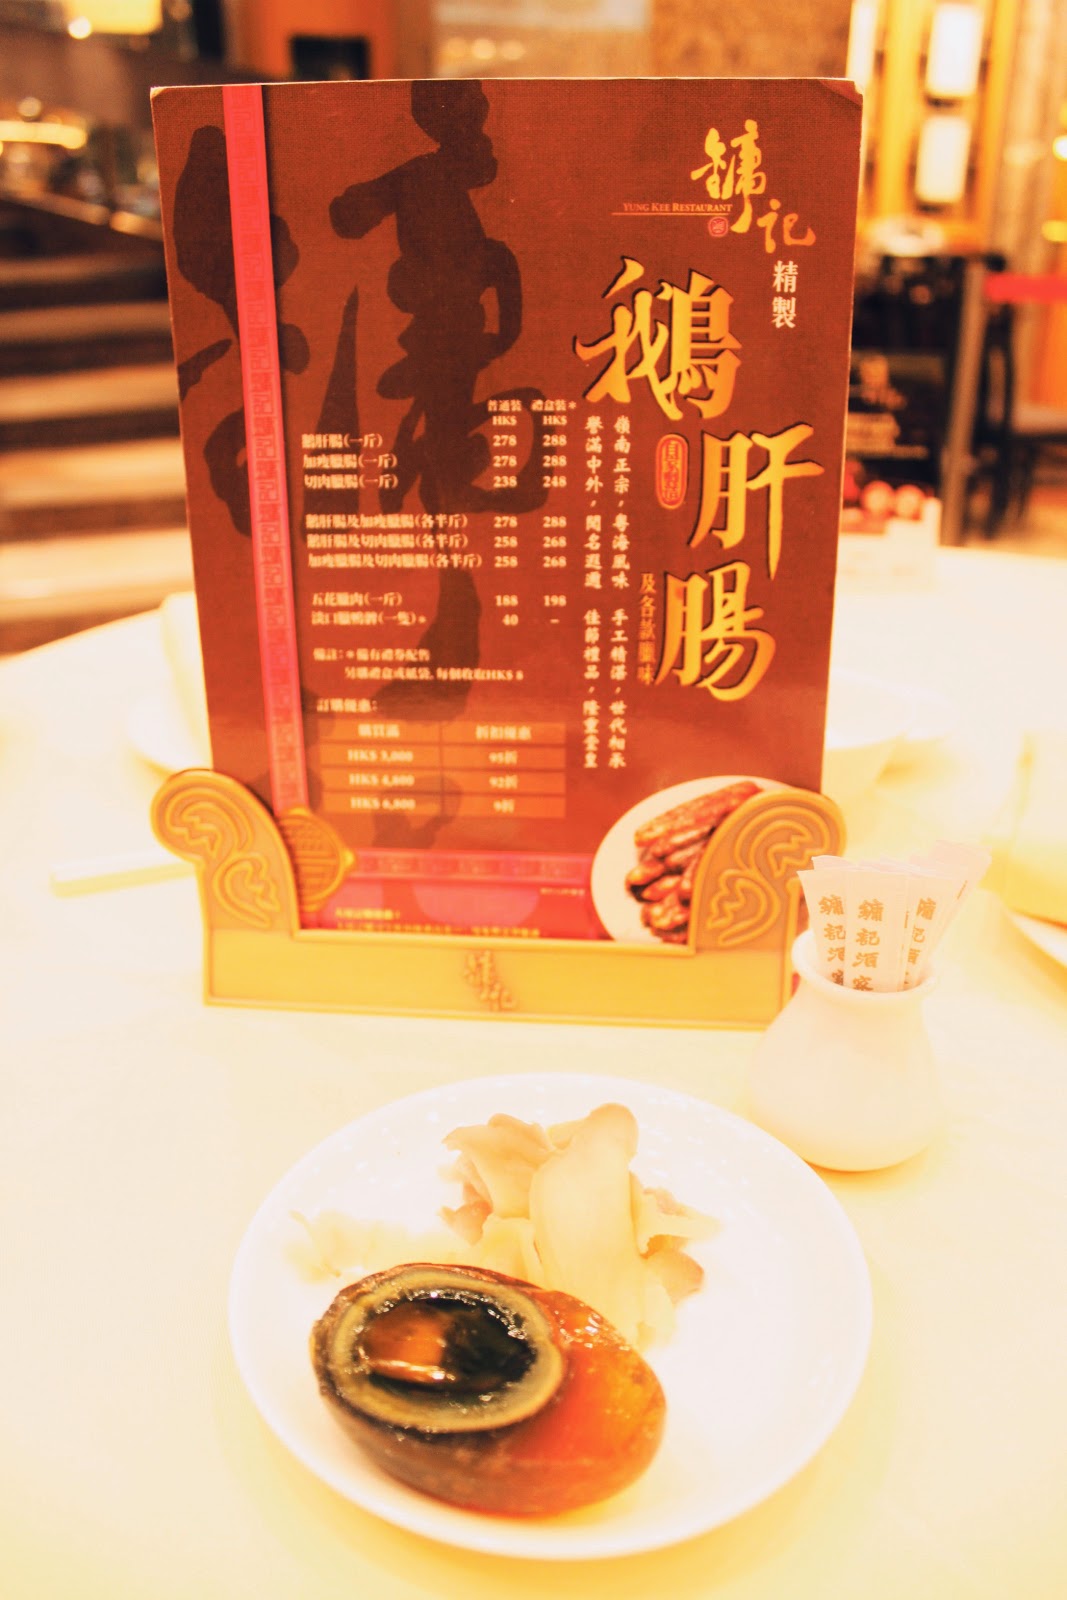 鏞記酒家 Yung Kee Restaurant @ 香港中環 Central, Hong Kong